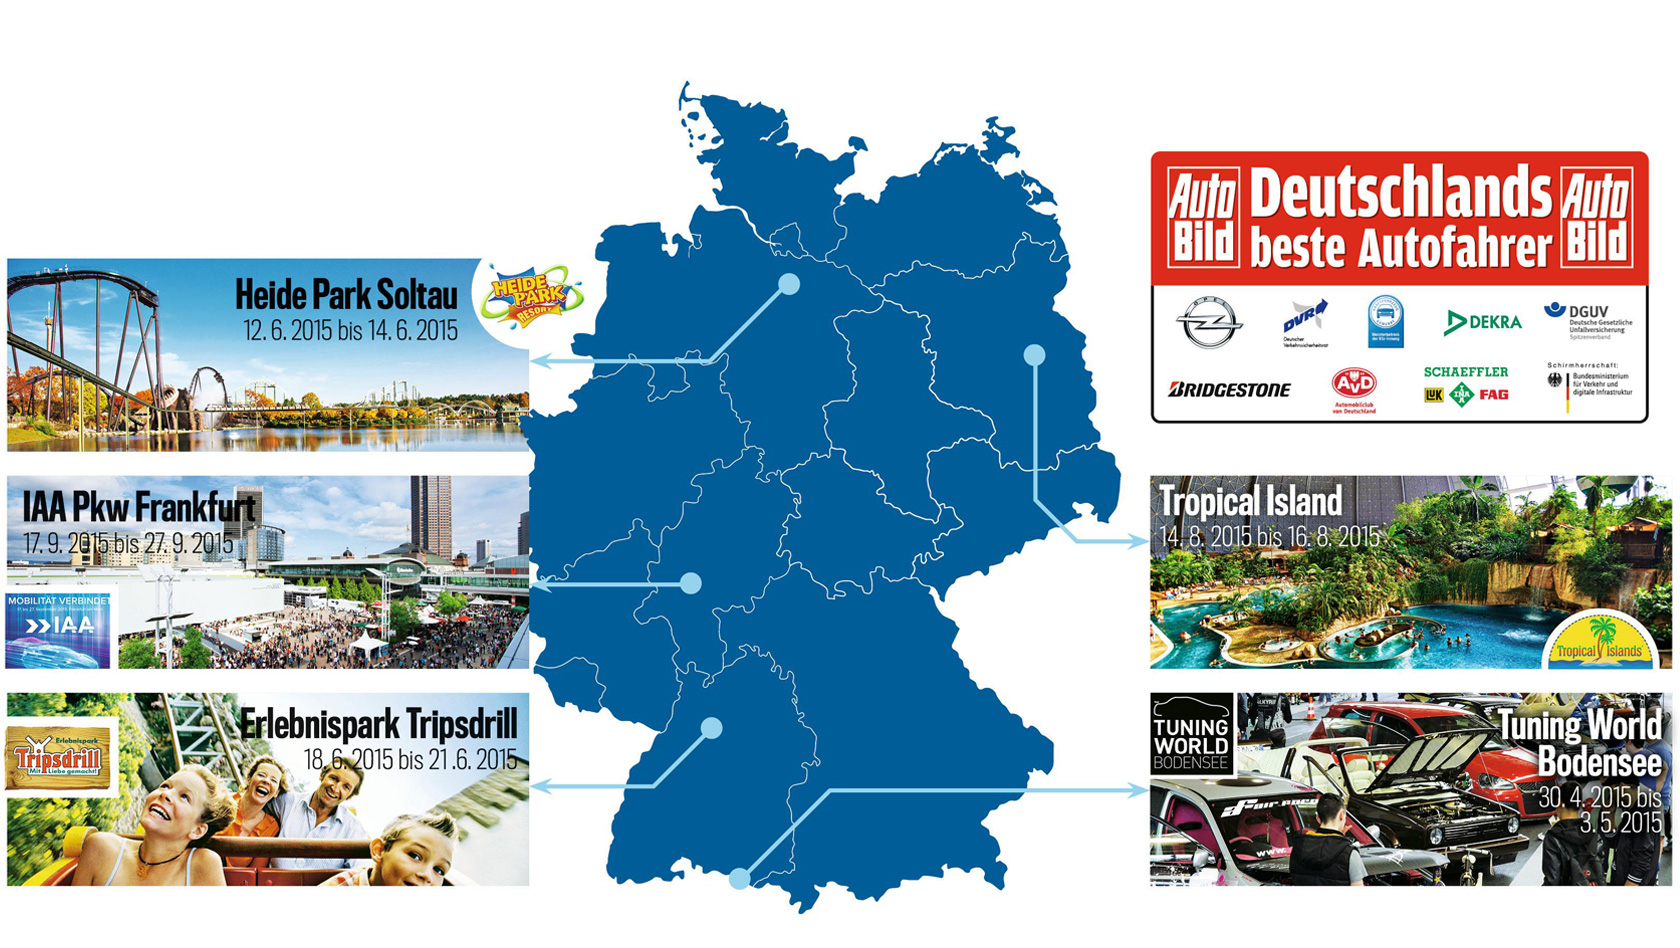 Auto Bild Deutschlands beste Autofahrer Events 2015